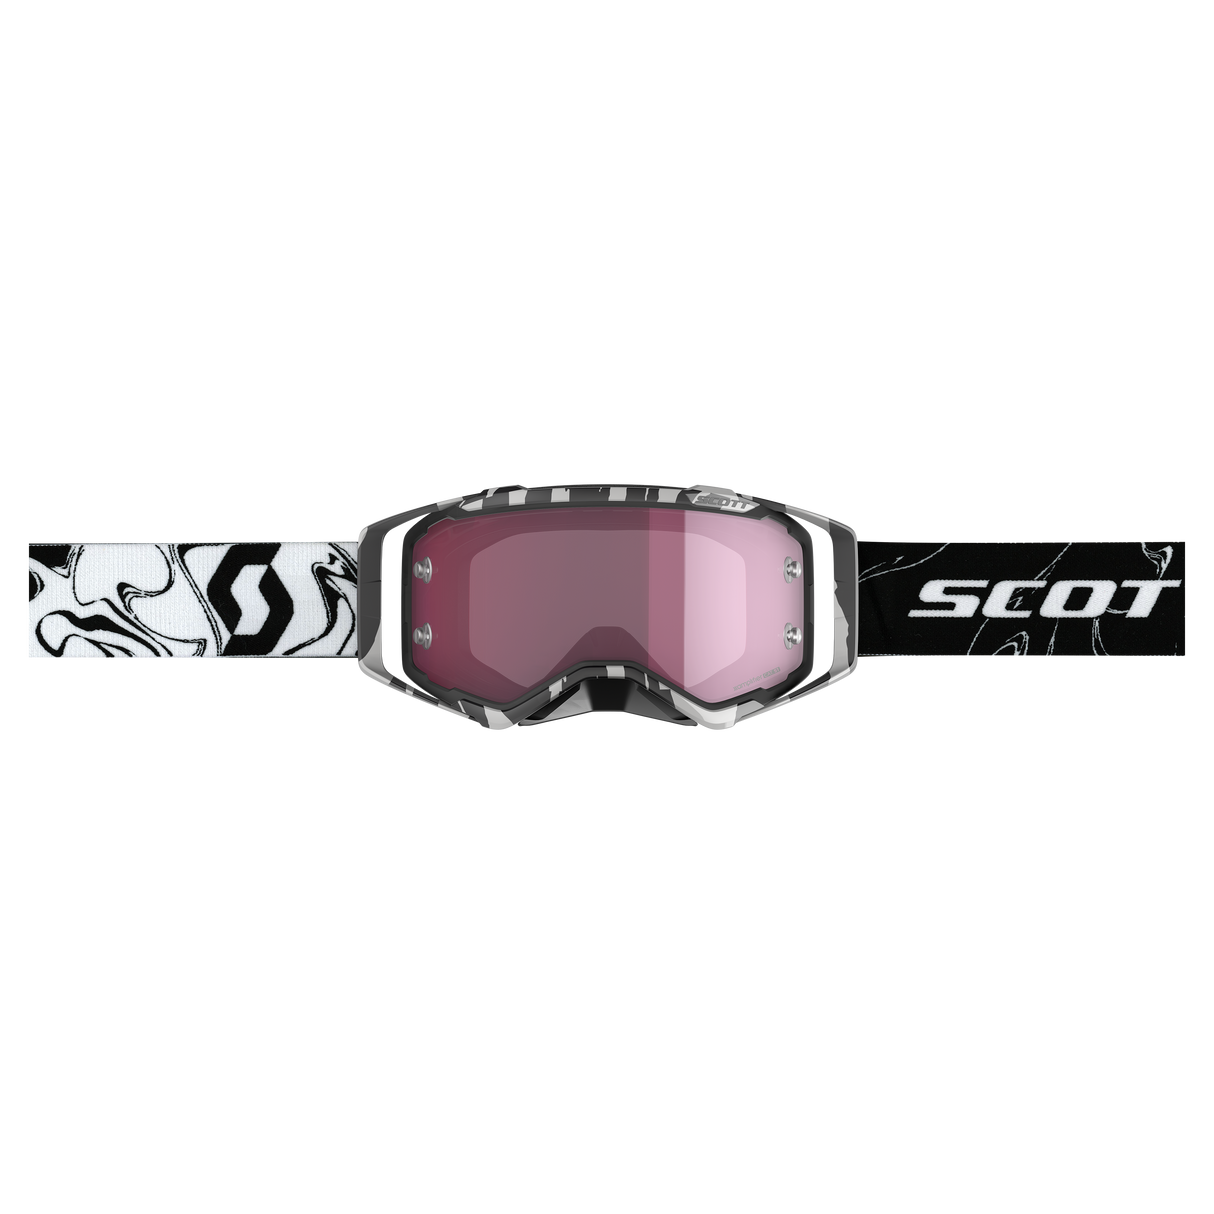 Scott Prospect Amplifier Goggle, Marble Black / White - Rose Chrome Works Lens